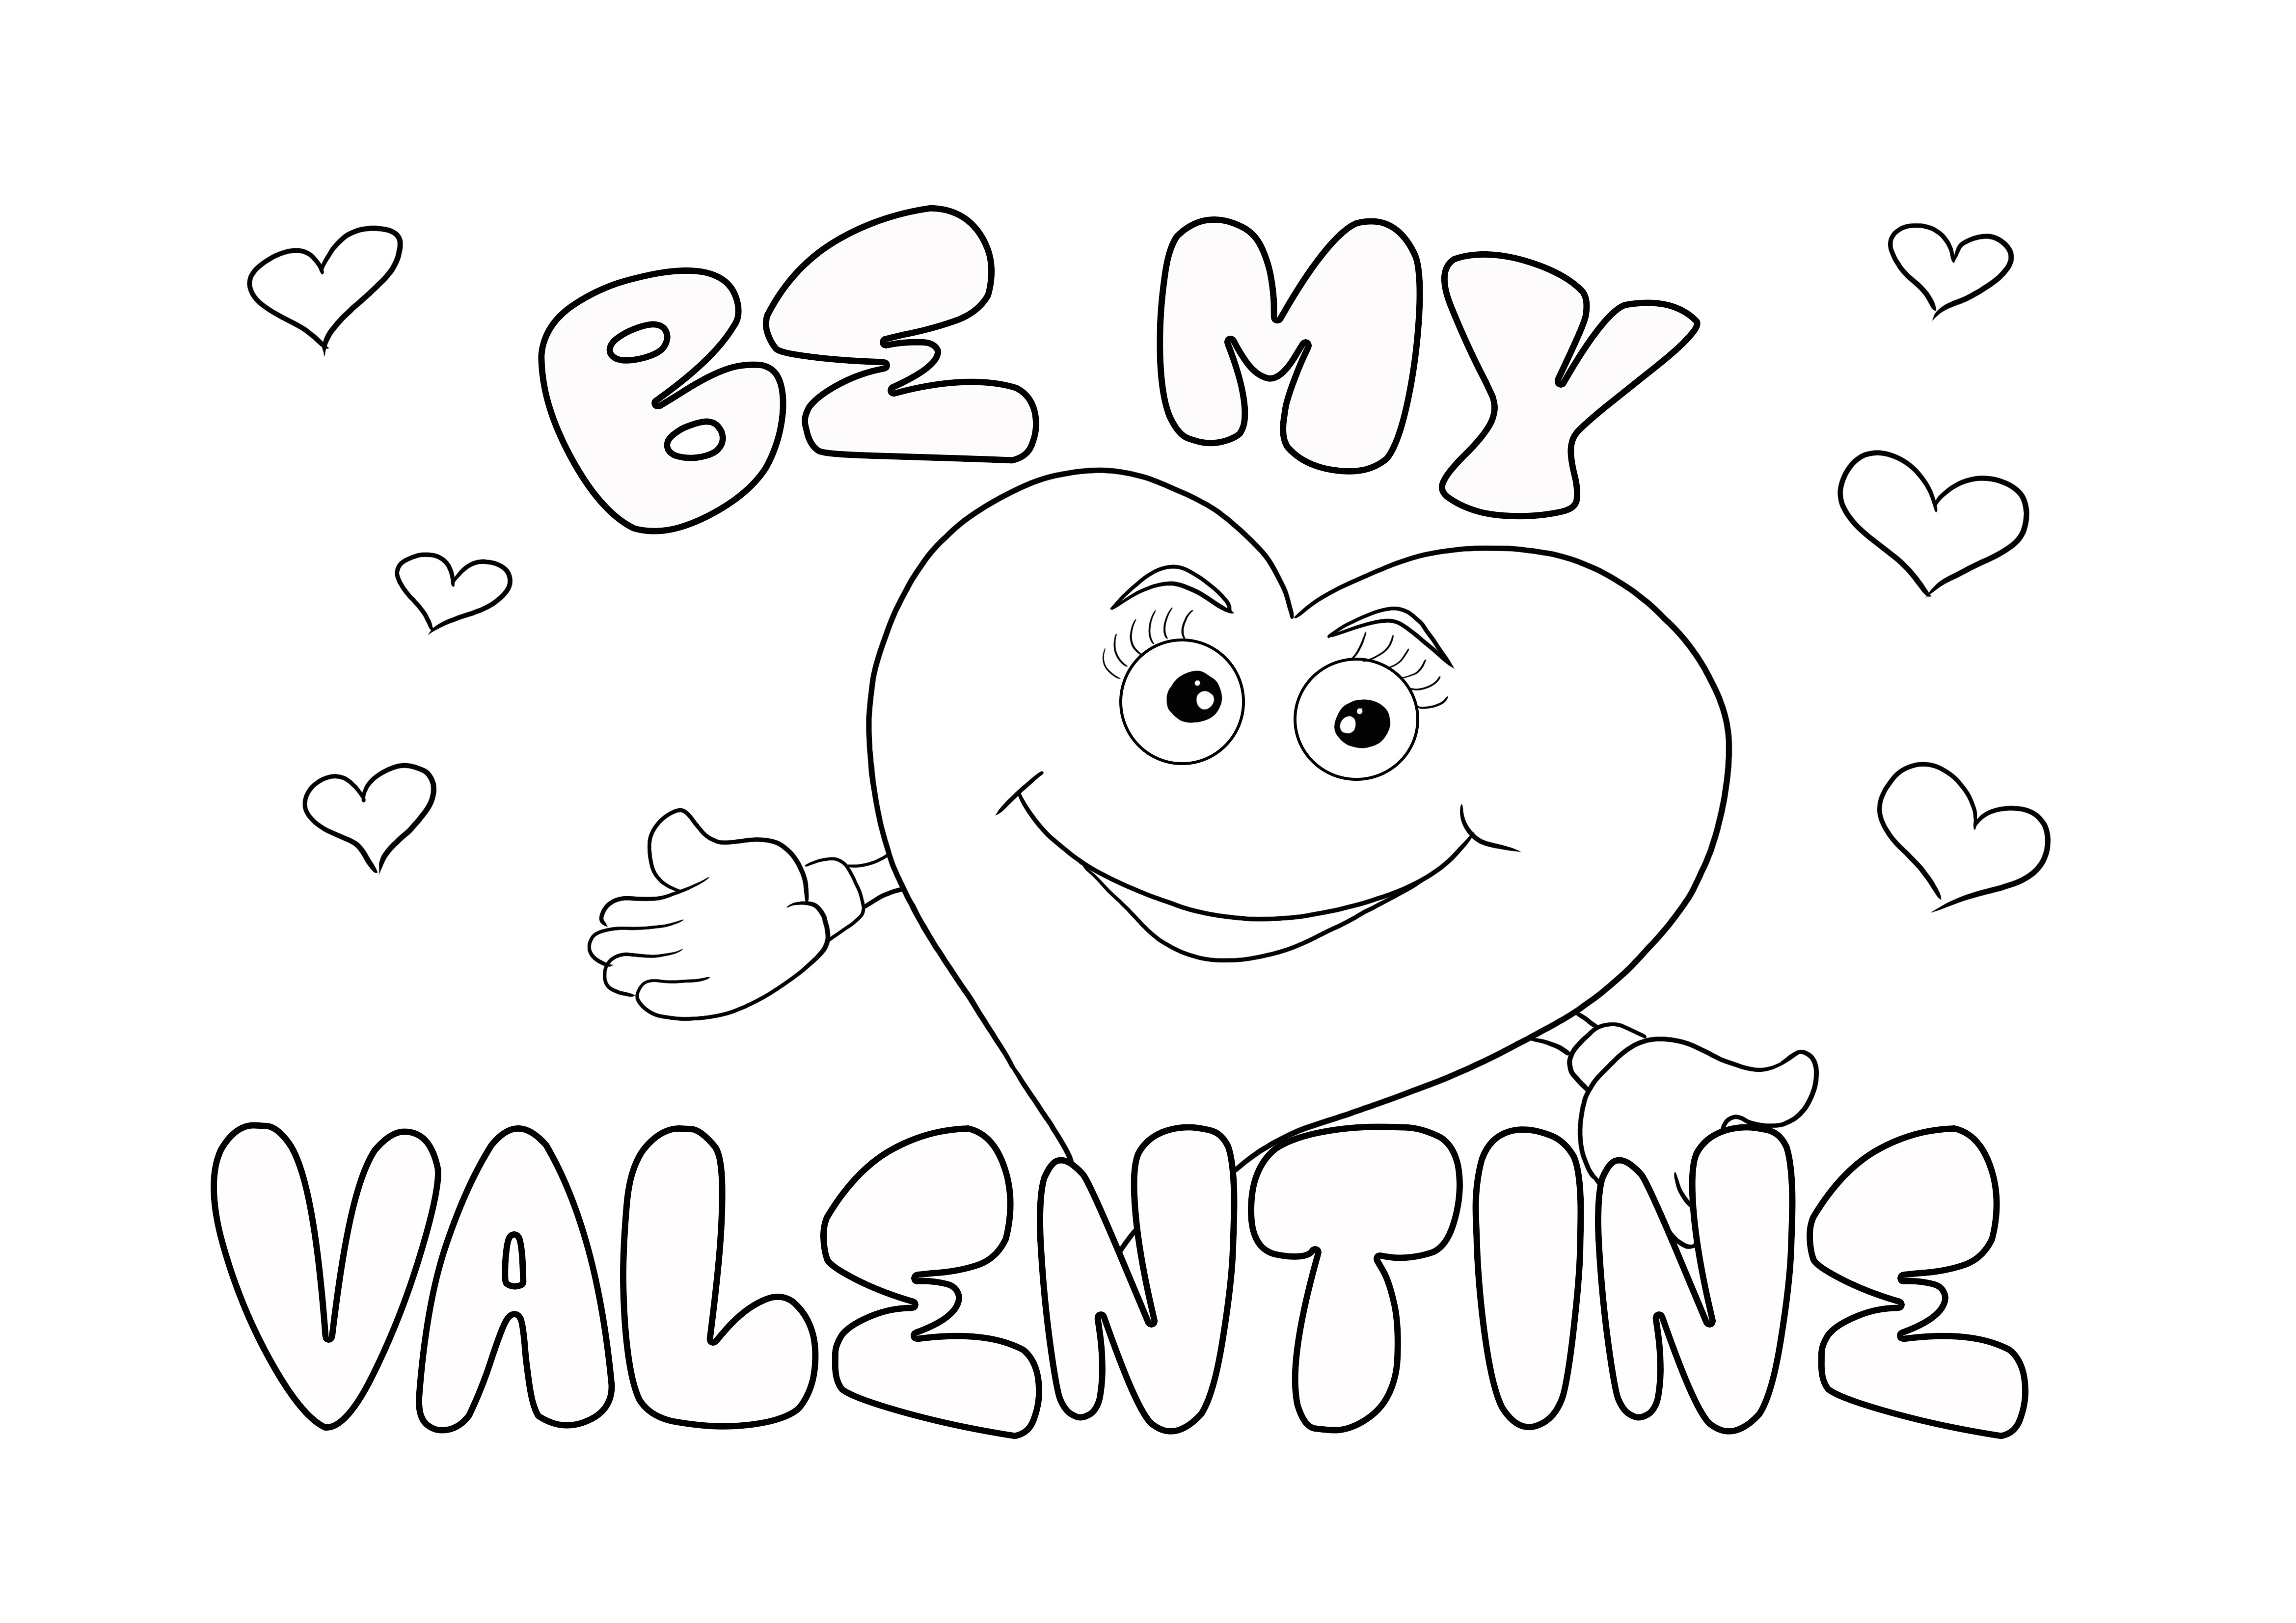 Be My Valentine kartındaki gülen kalp, renkli olarak ücretsiz yazdırılabilir